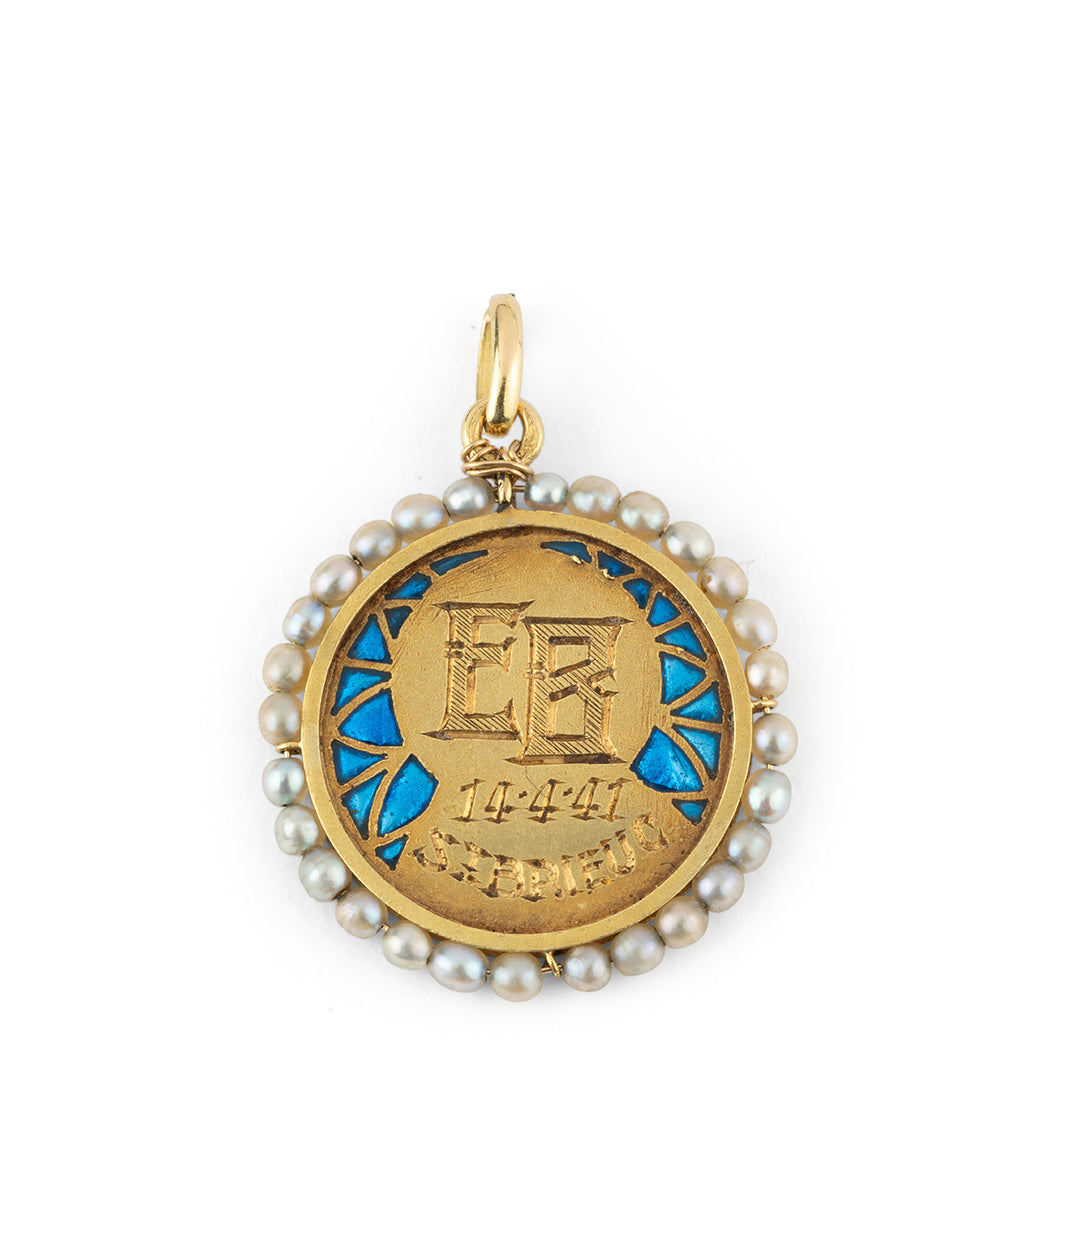 Art nouveau medal plique a jour Gaizka - Caillou Paris